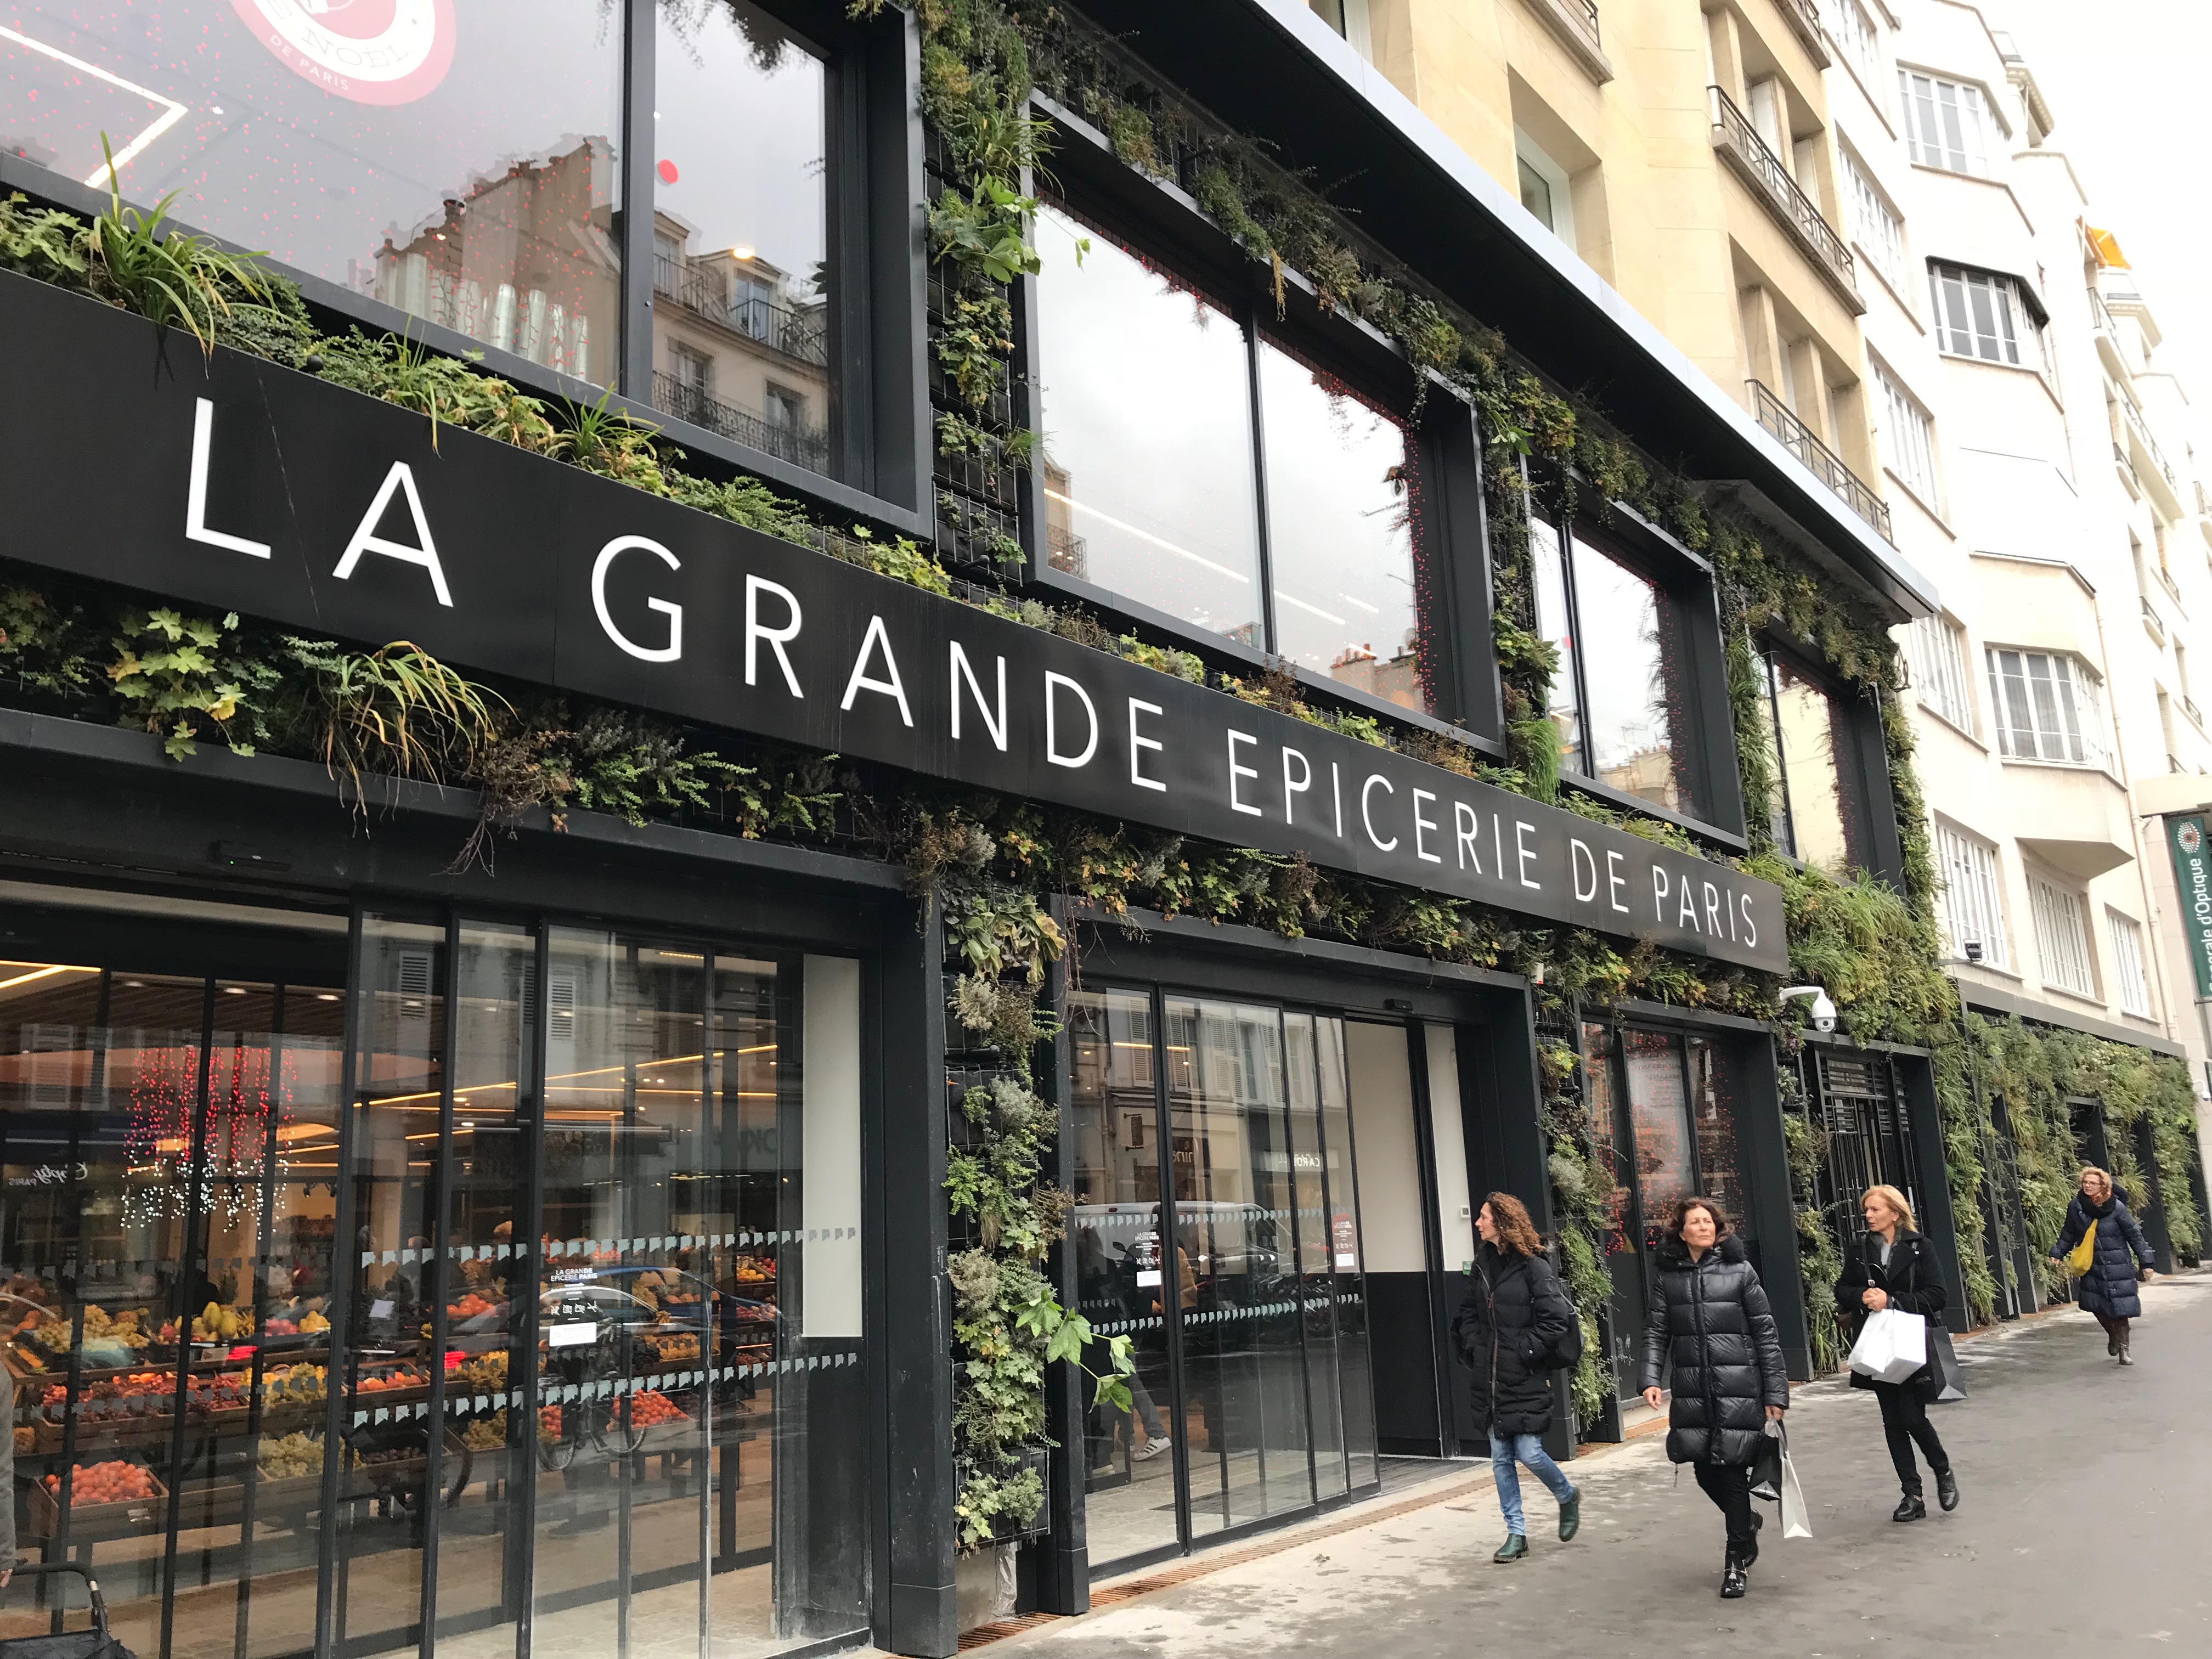 La grande Epicerie » de Paris : the gourmet temple – Ann Jeanne in Paris